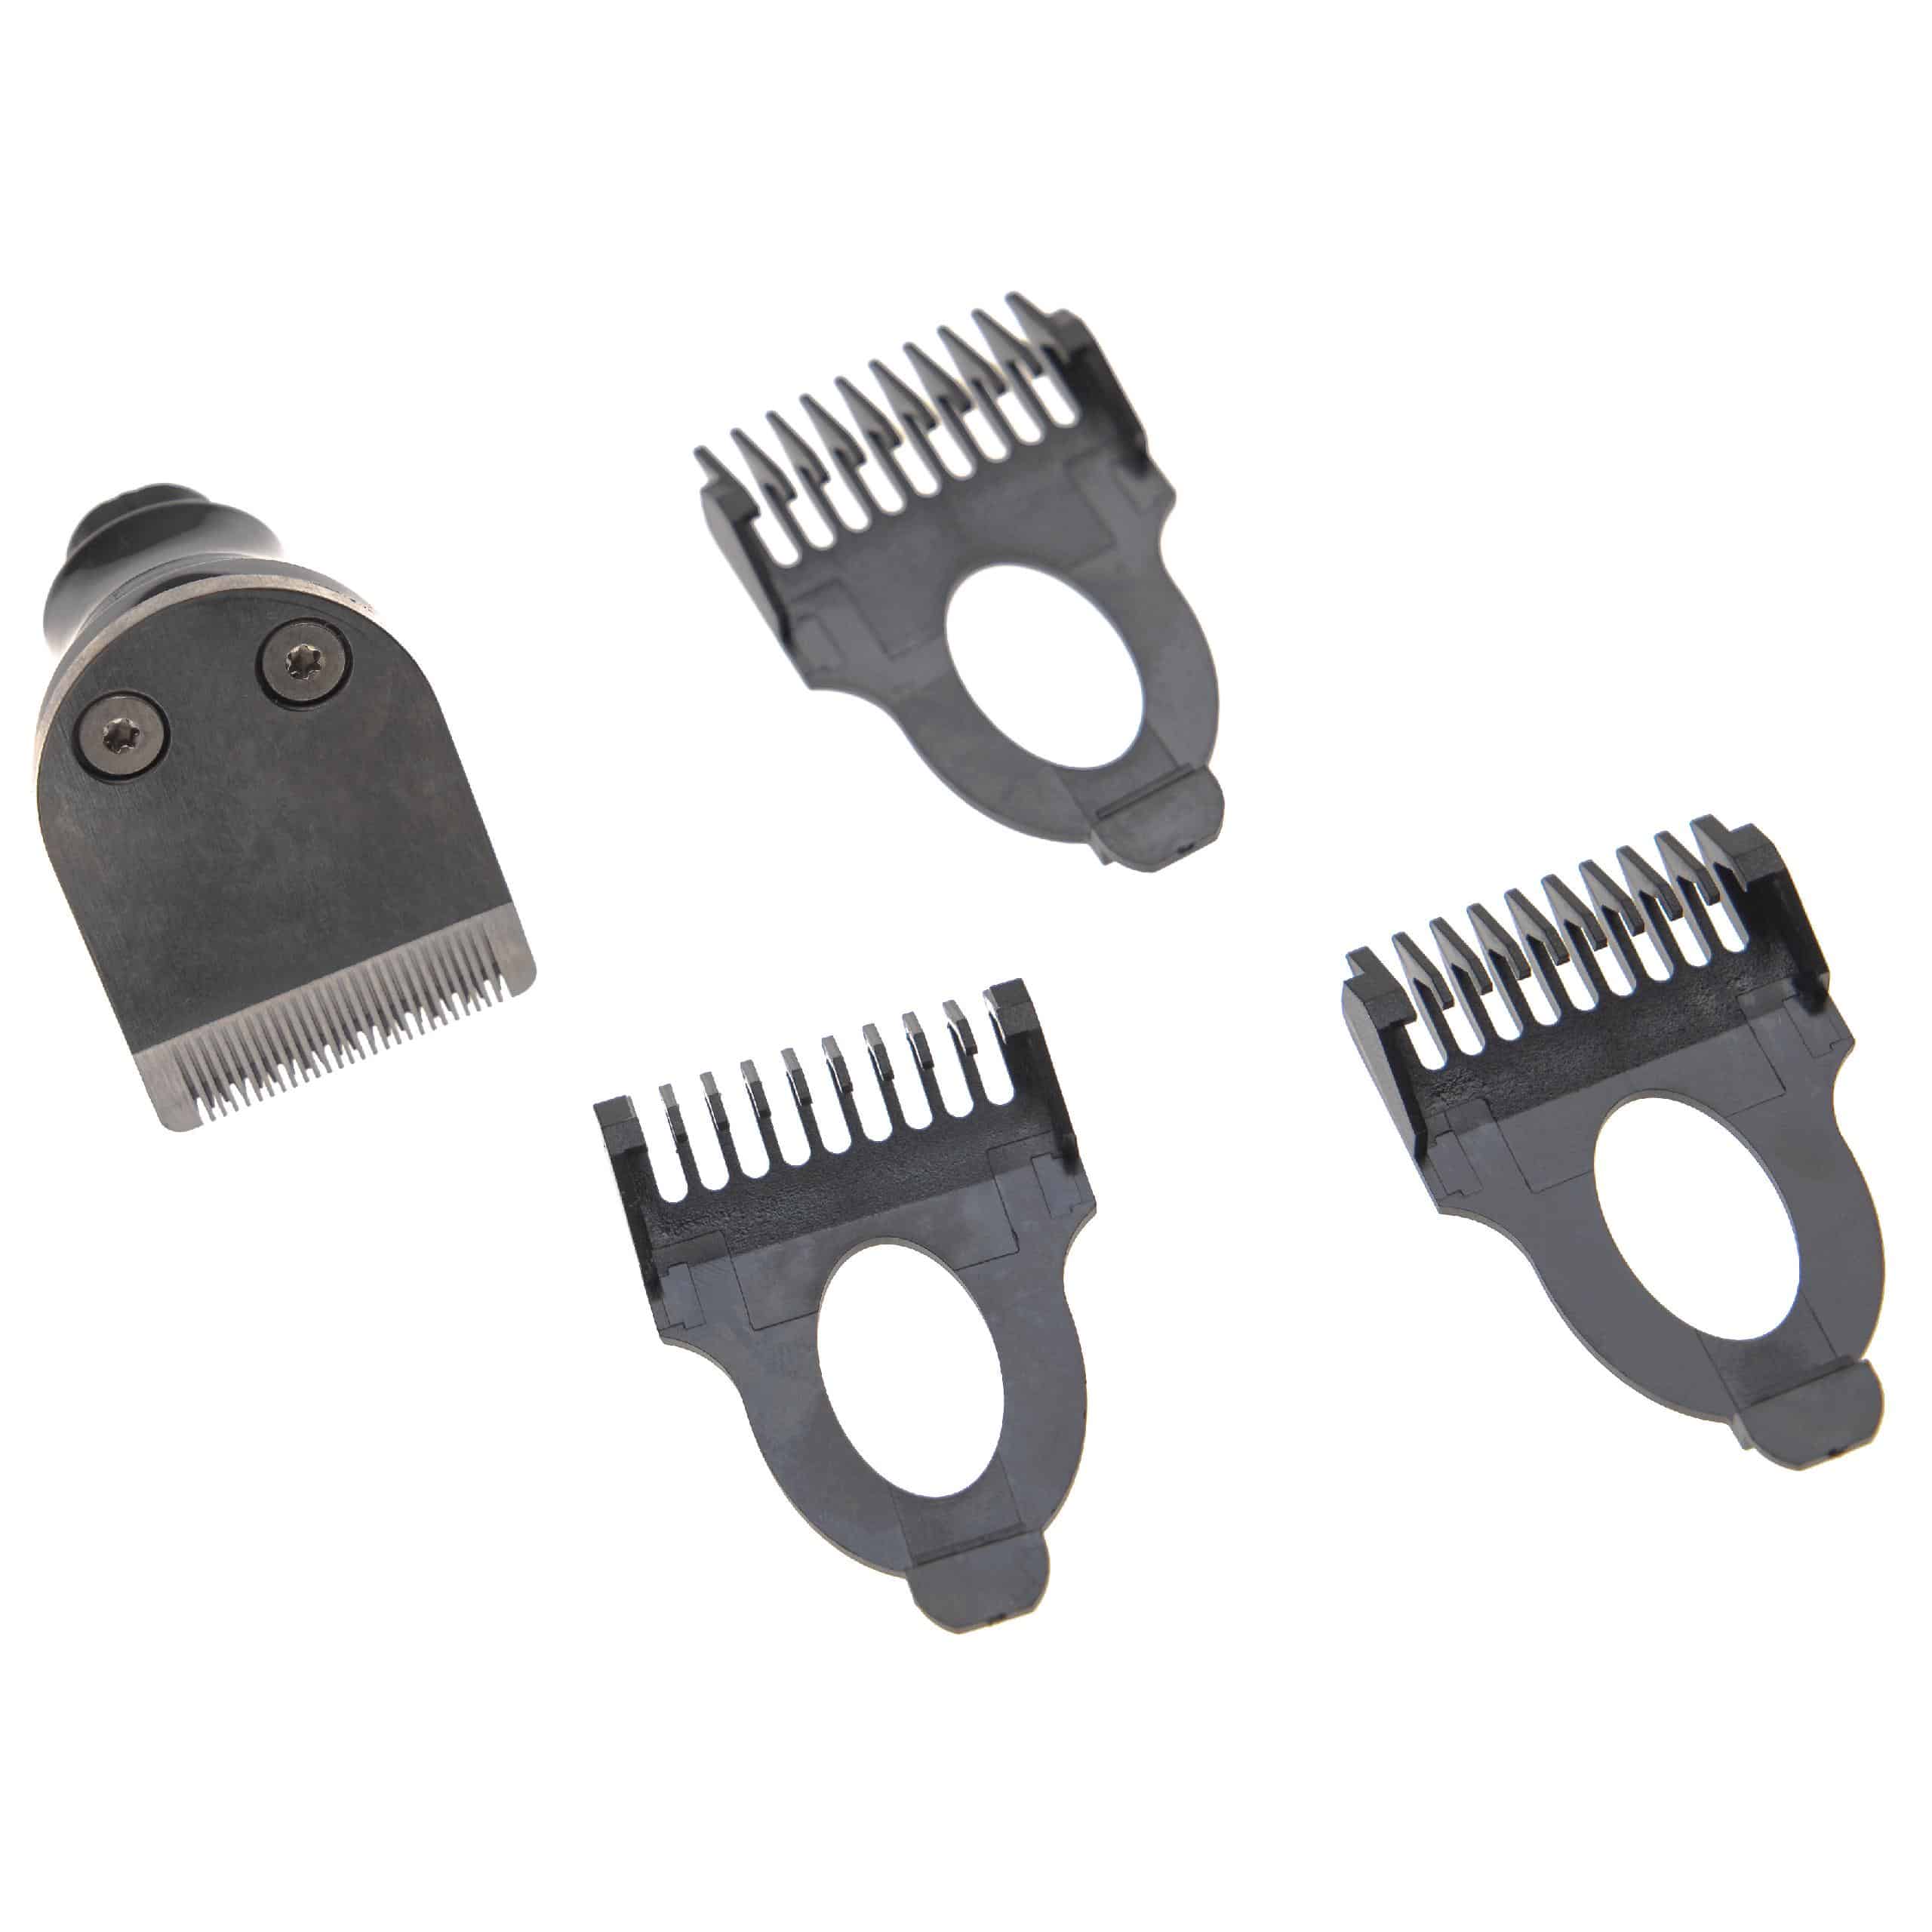 Accessorio per trimmer (set) per Philips Arcitec rasoio ecc. - 4 pzz. + pettine da 3mm / 5mm / 7mm